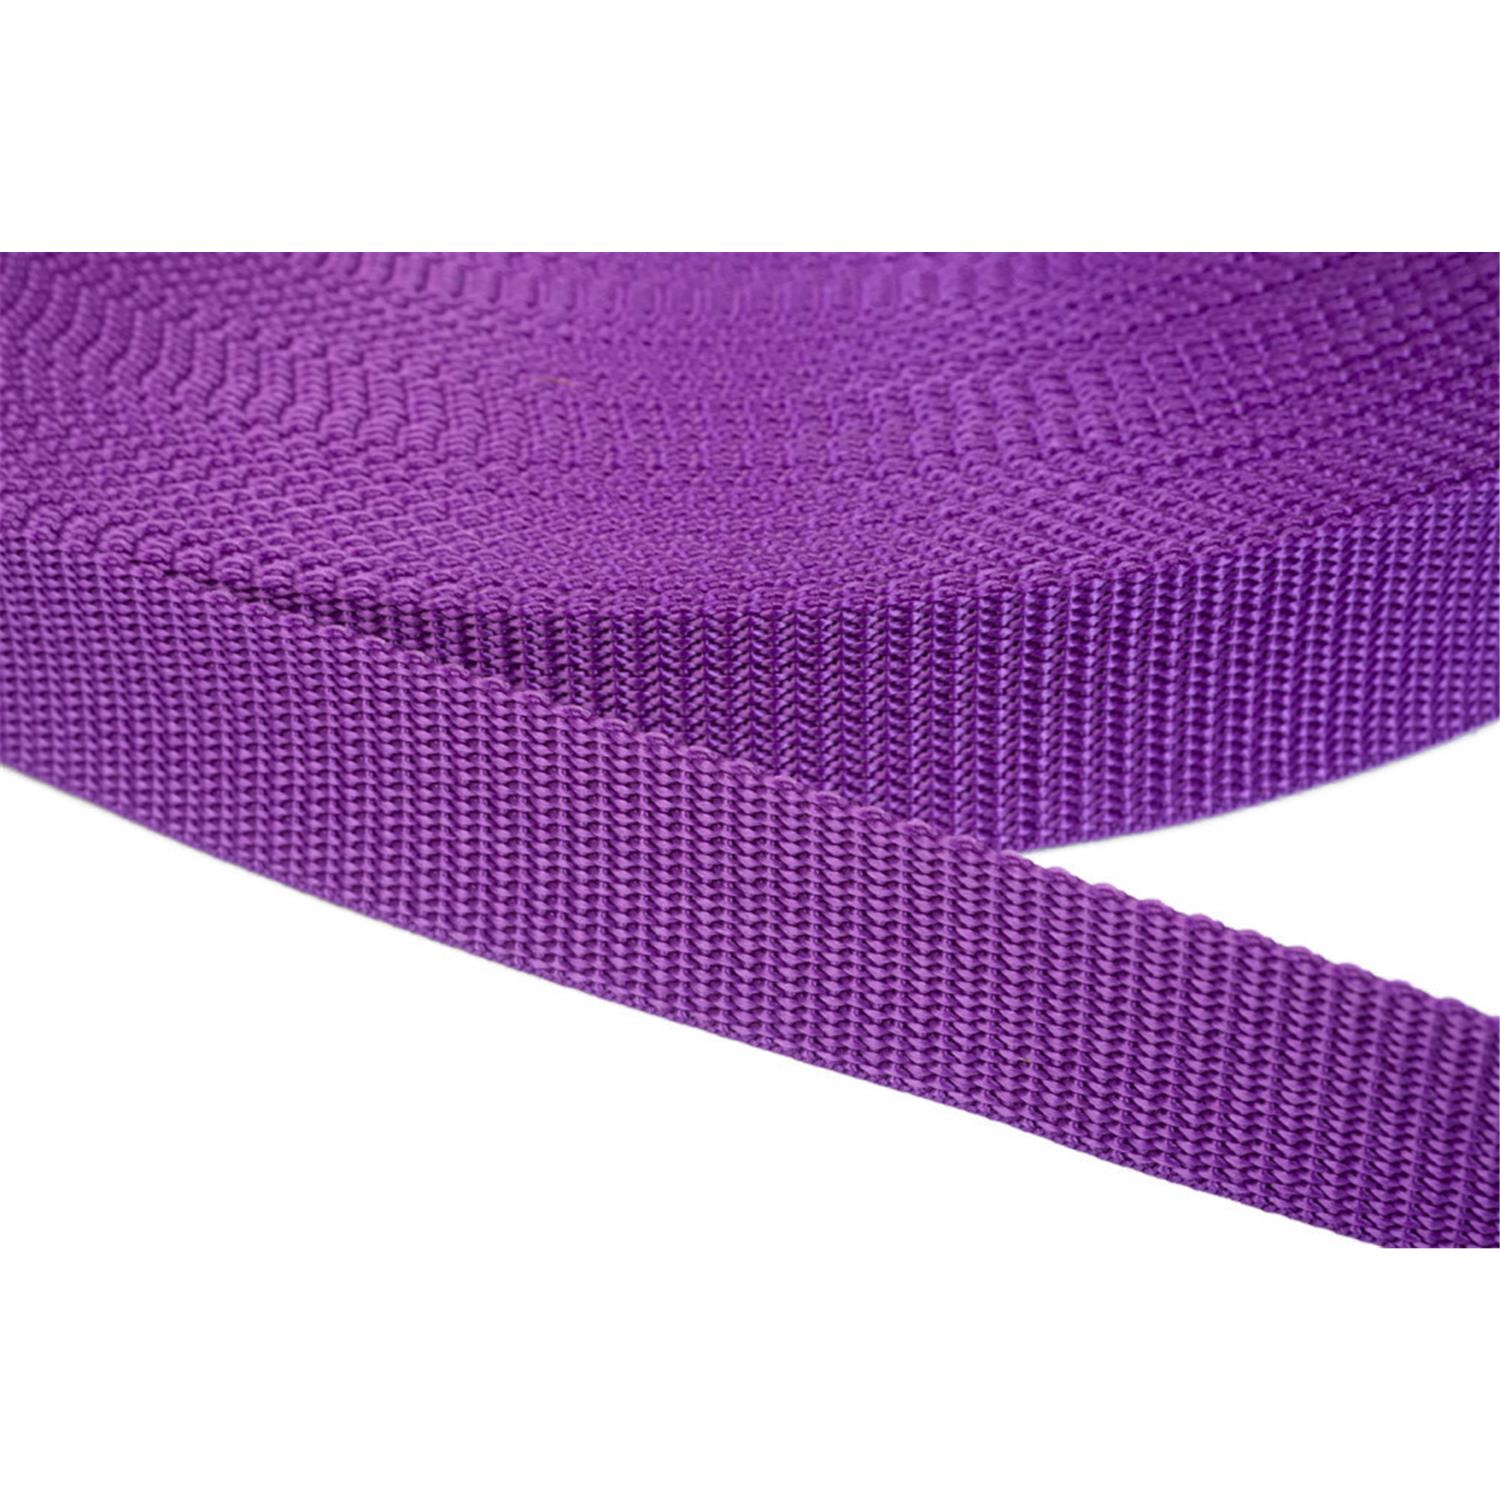 Gurtband 50mm breit aus Polypropylen in 41 Farben 24 - lila 12 Meter